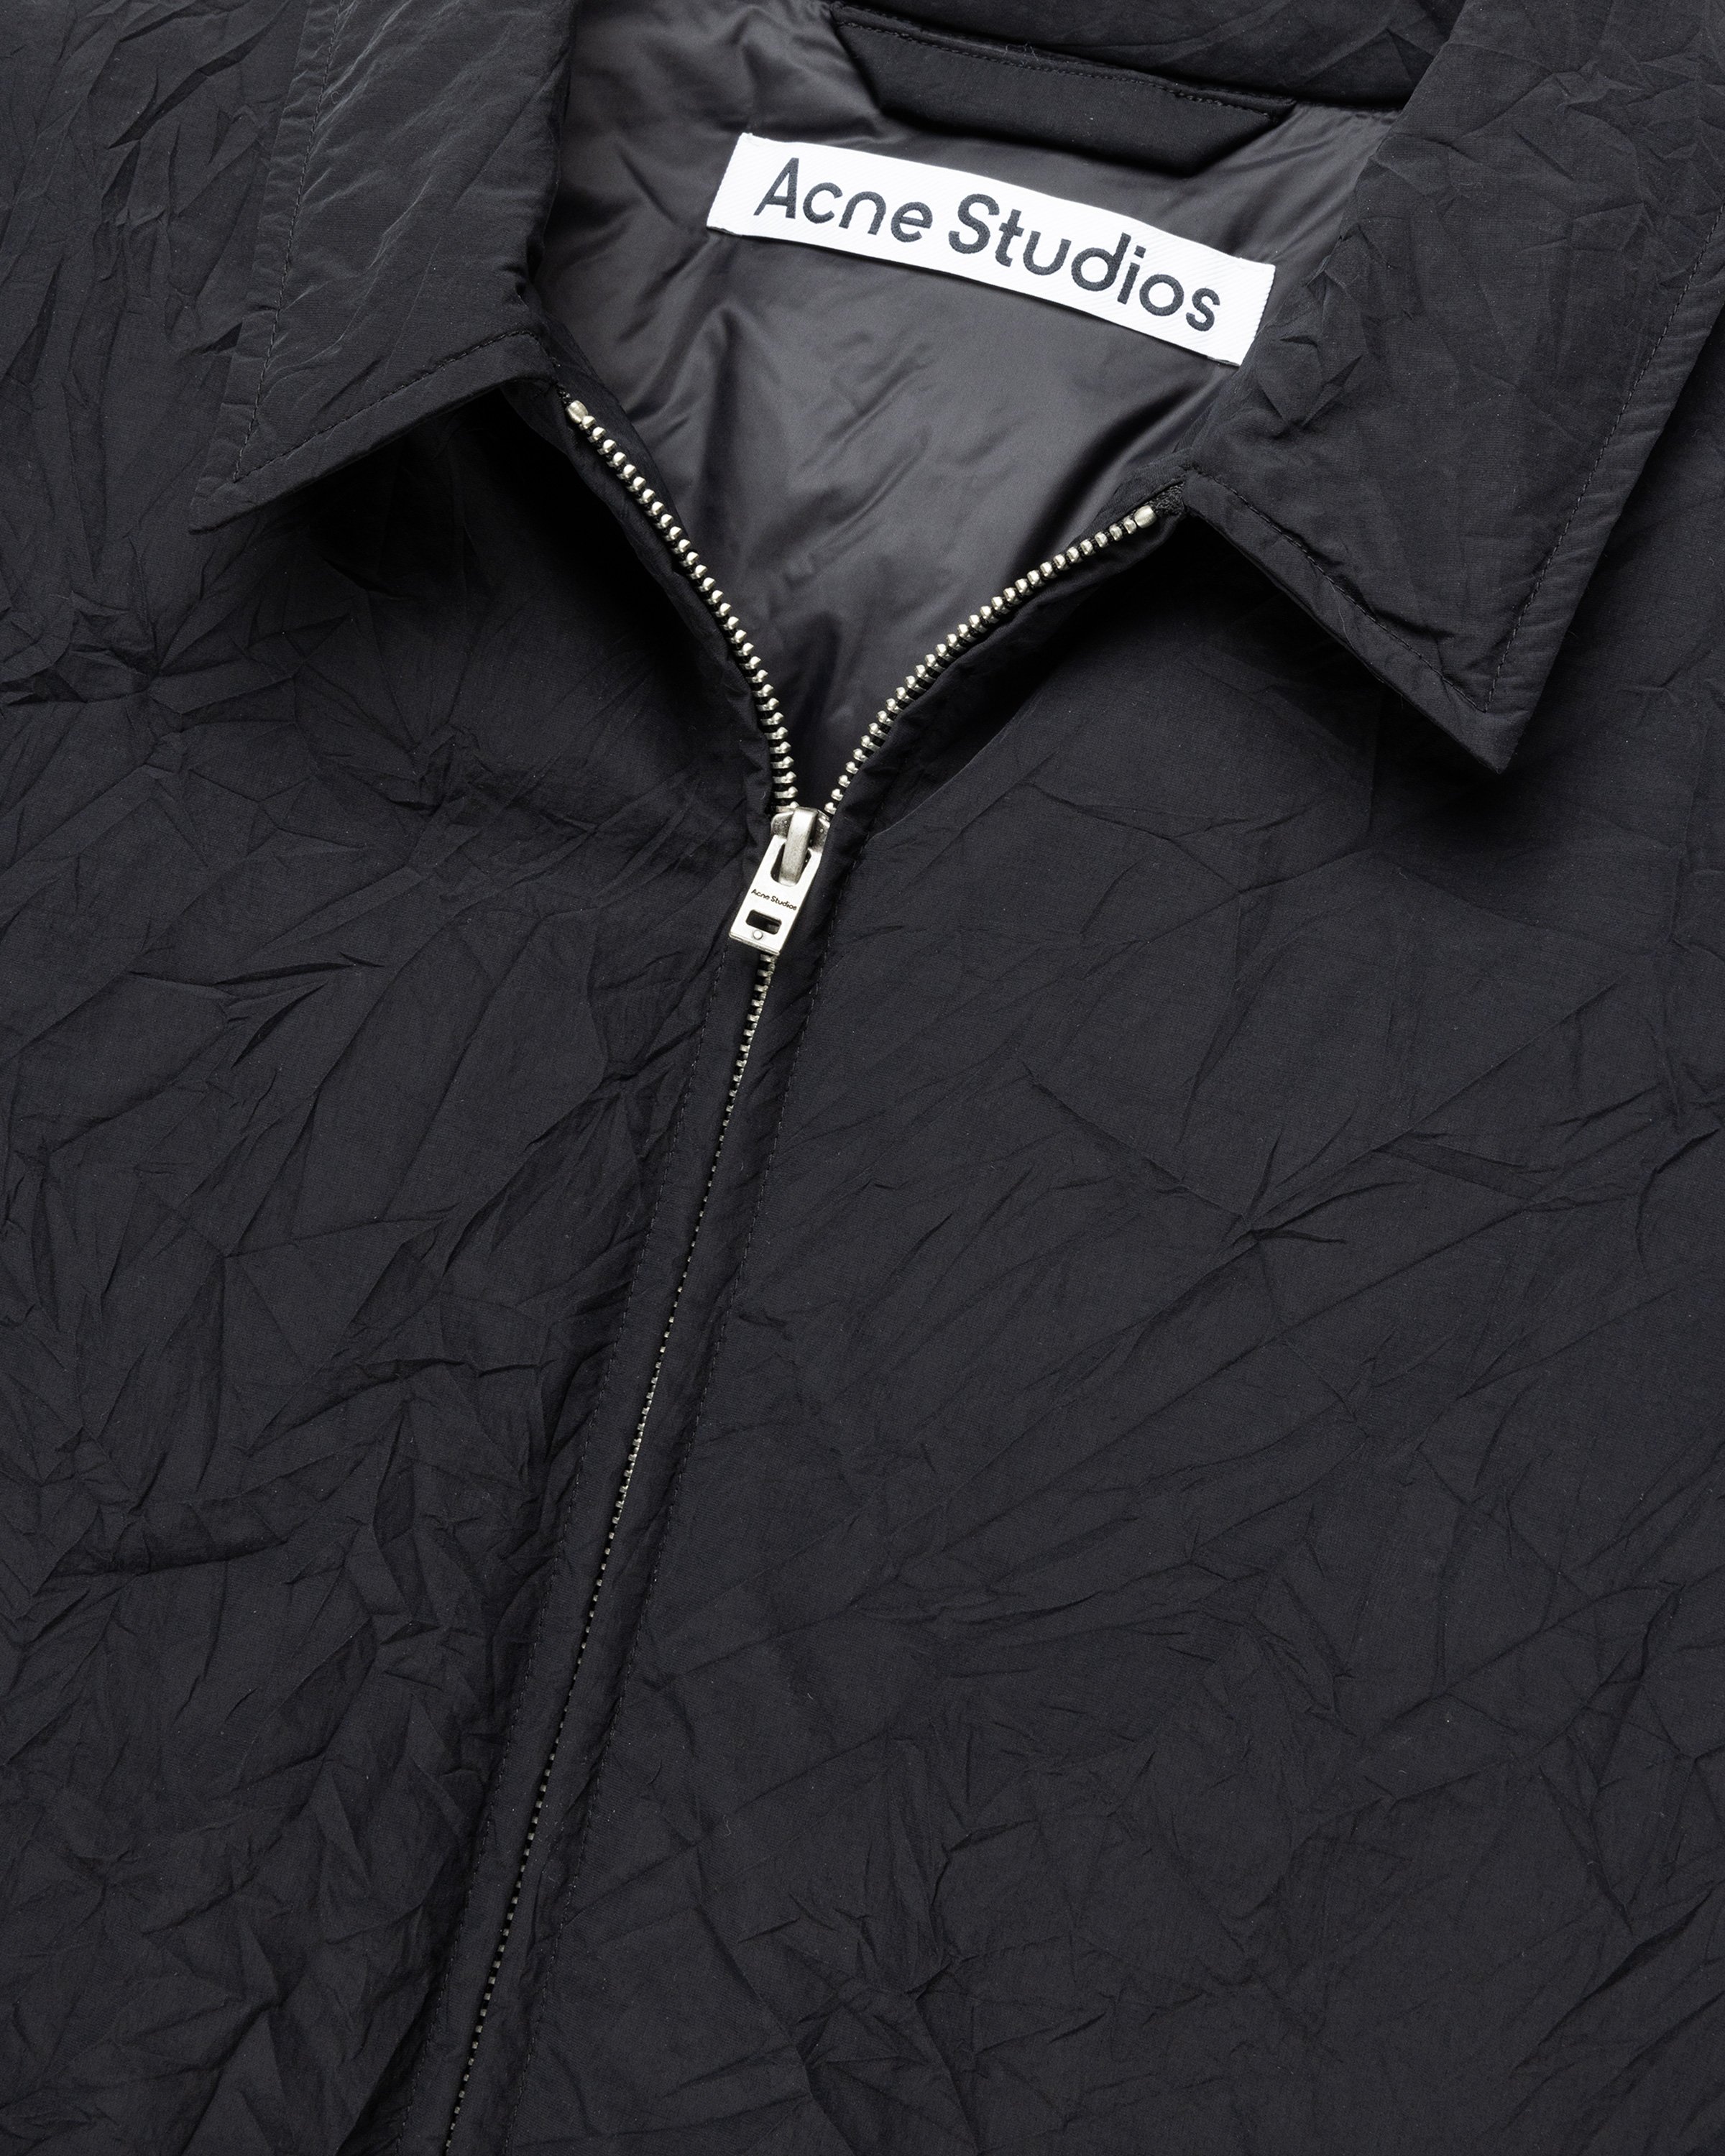 Acne Studios - Nylon Jacket Black - Clothing - Black - Image 7